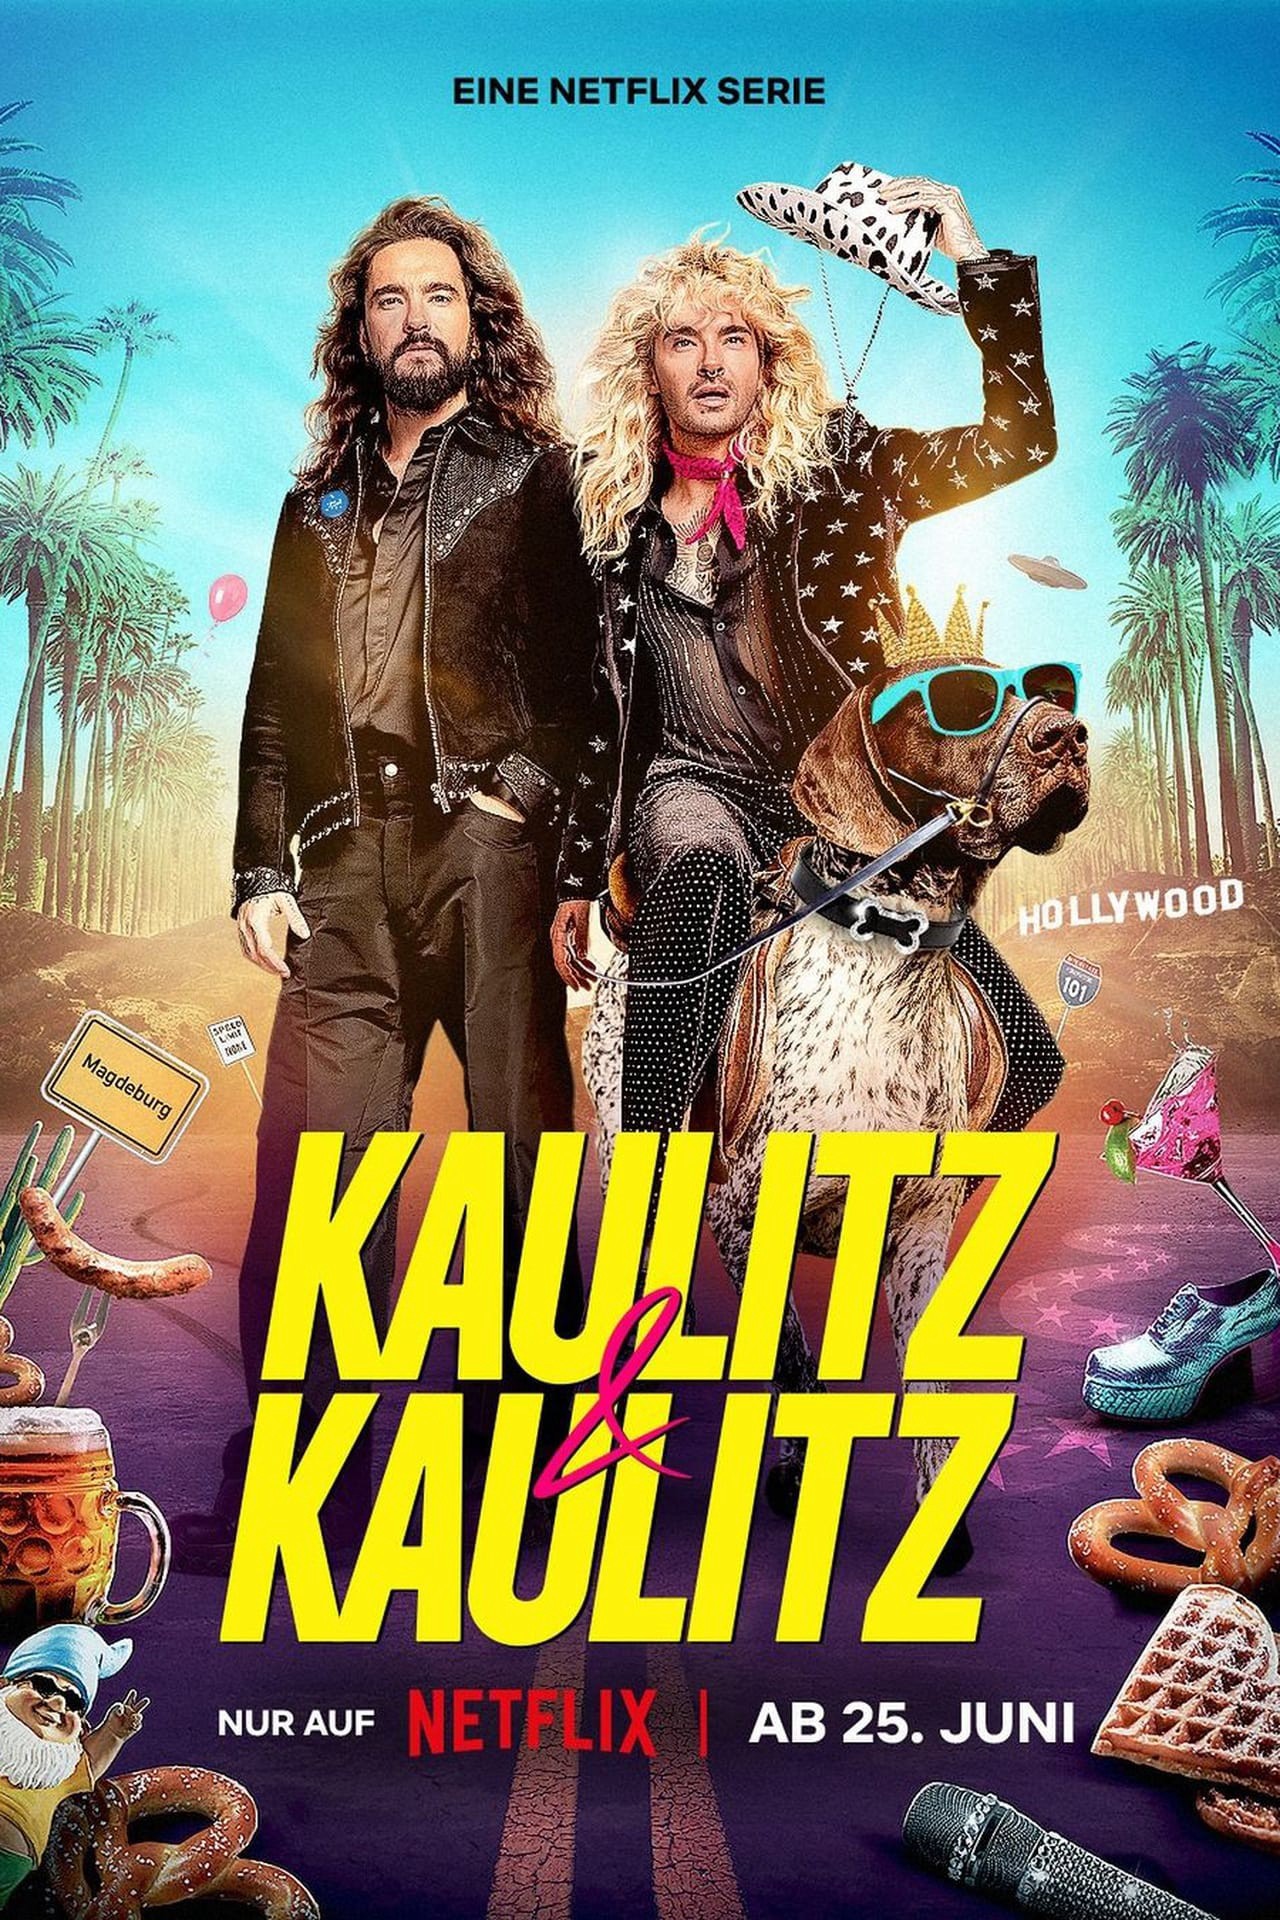 Kaulitz & Kaulitz - Kaulitz & Kaulitz